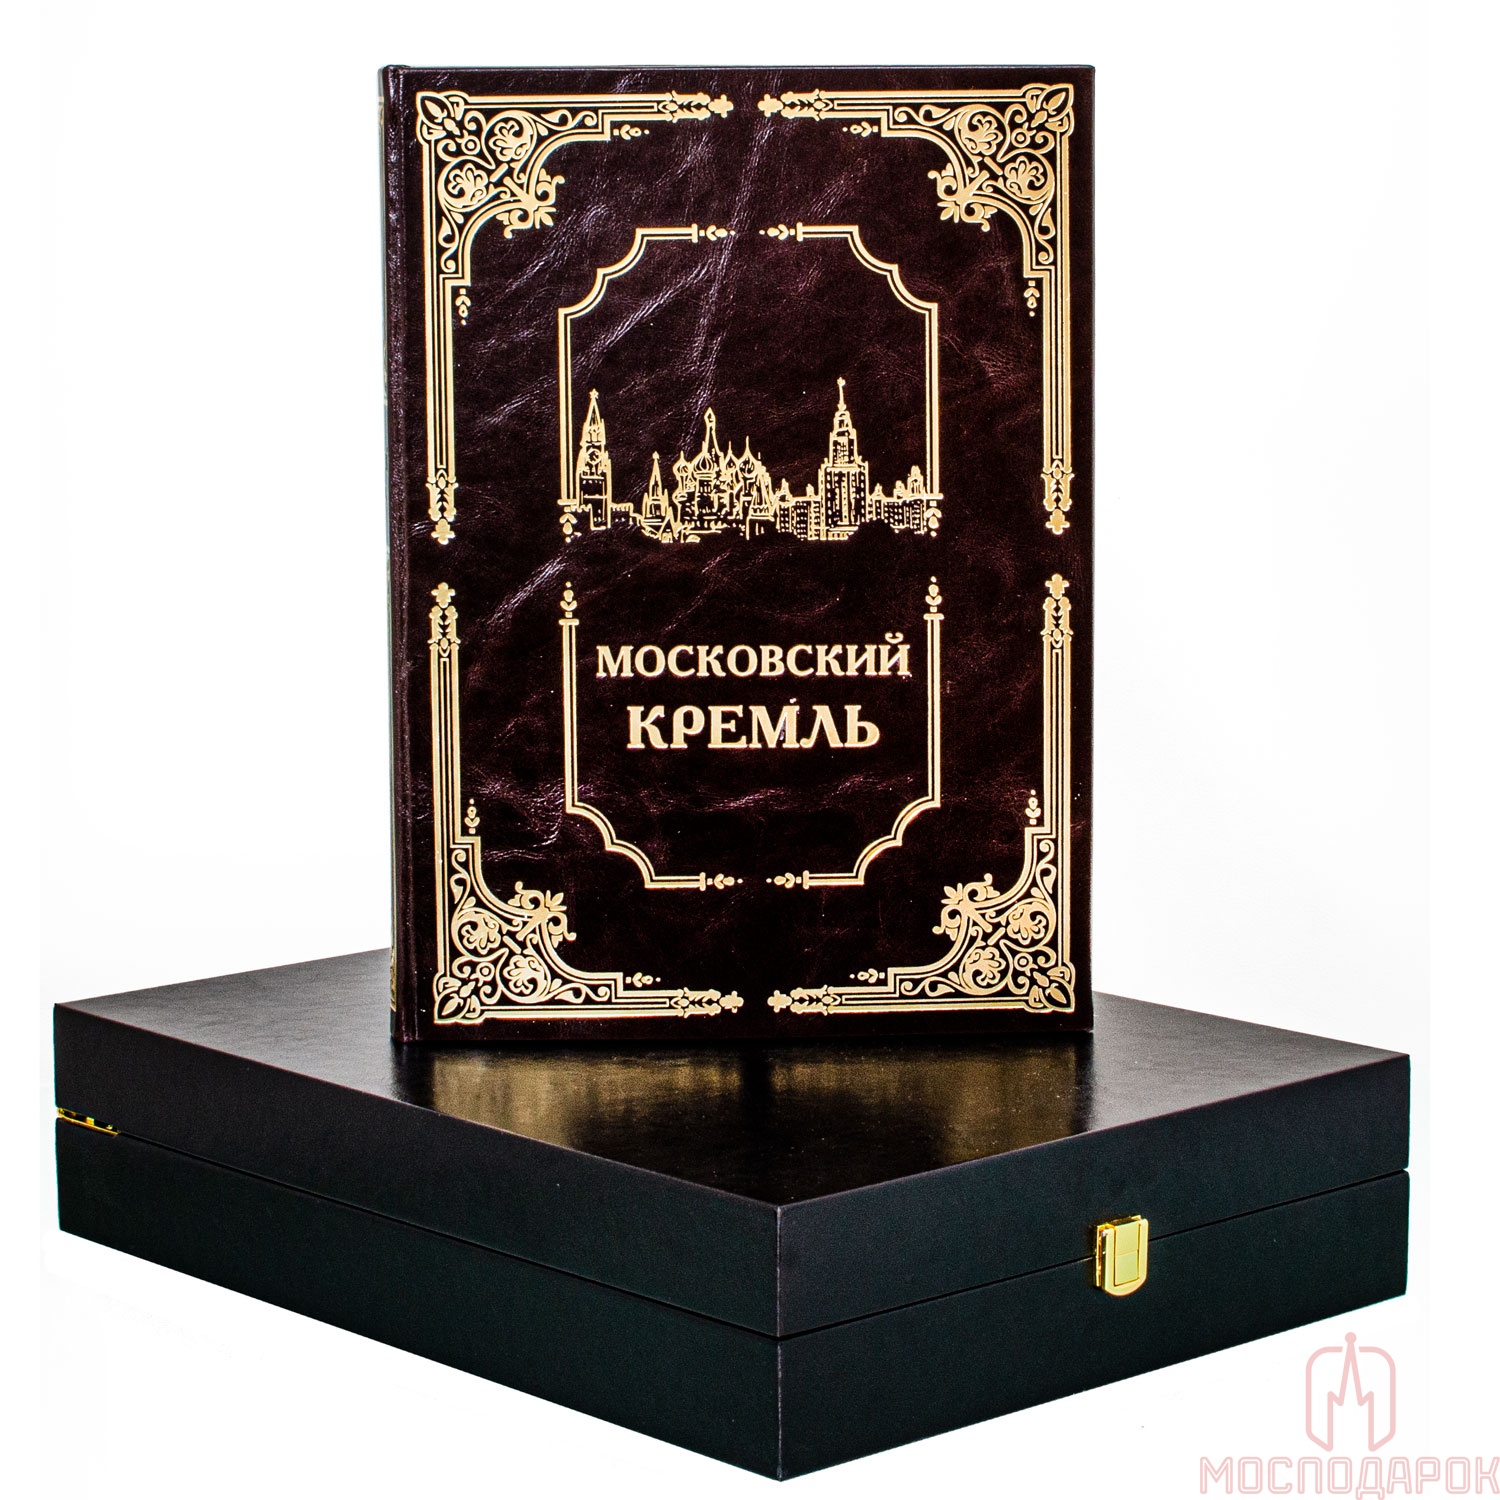 Подарочная книга "Московский Кремль" - артикул: 205380 | Мосподарок 